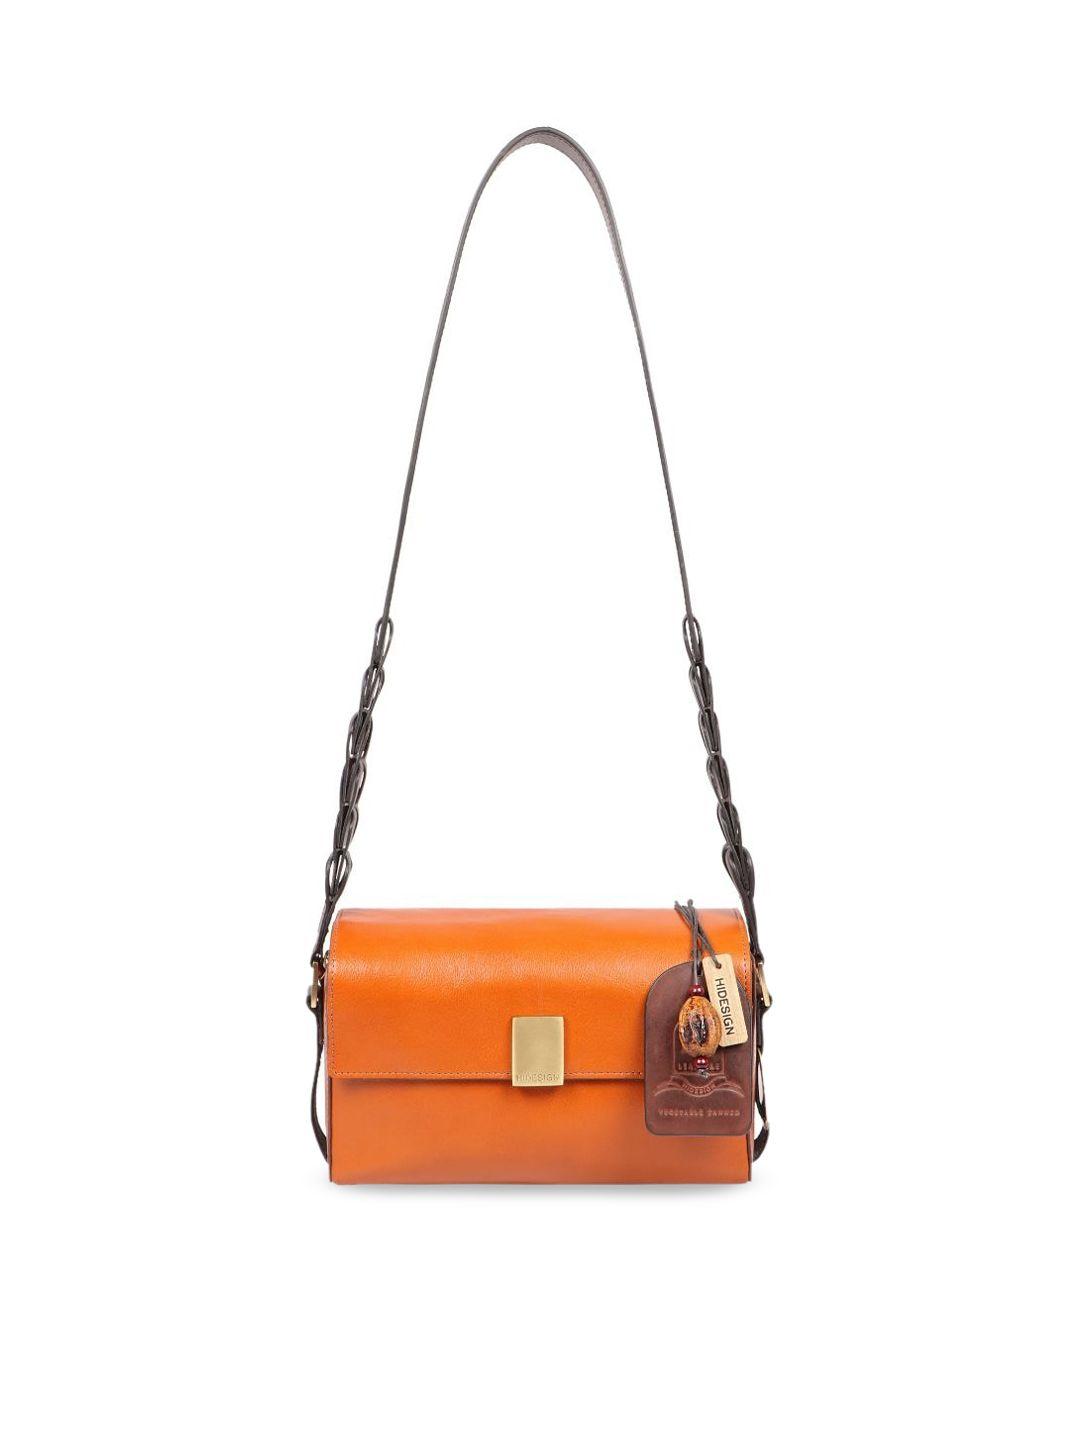 hidesign orange leather structured sling bag